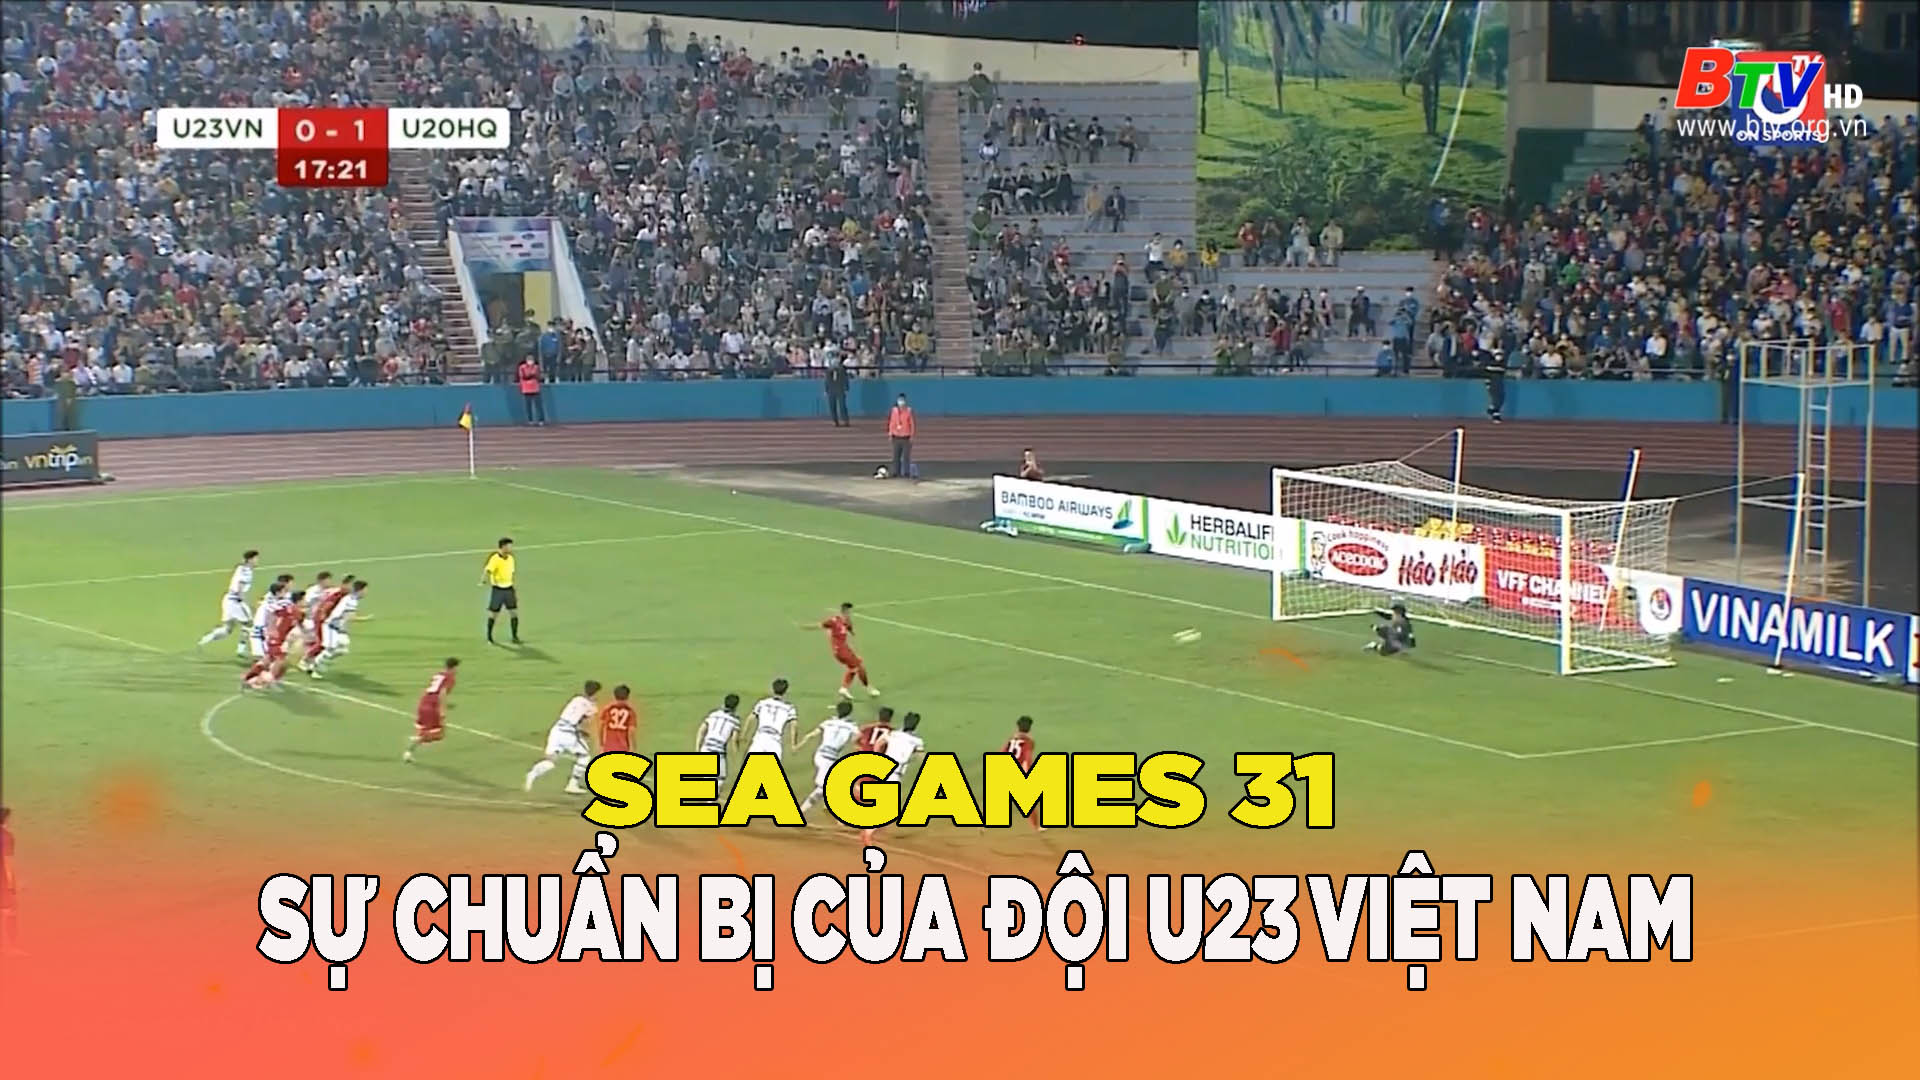 Sự chuẩn bị của đội U23 Việt Nam cho SEA Games 31